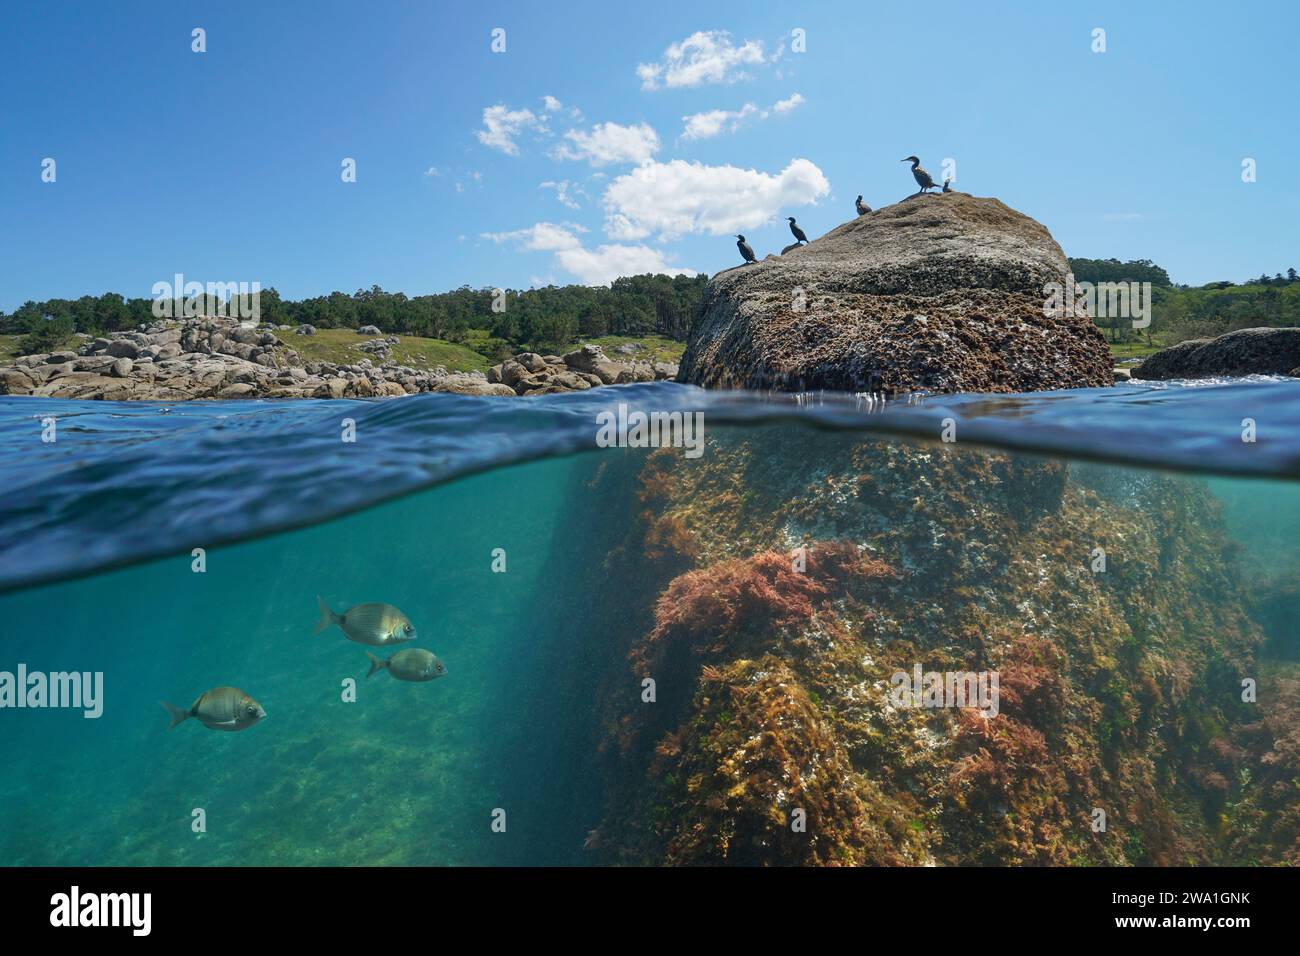 Küste mit Kormoranvögeln auf einem Felsen und Fisch unter Wasser, geteilte Ebene Blick über und unter der Wasseroberfläche, Atlantik, natürliche Szene, Spanien Stockfoto